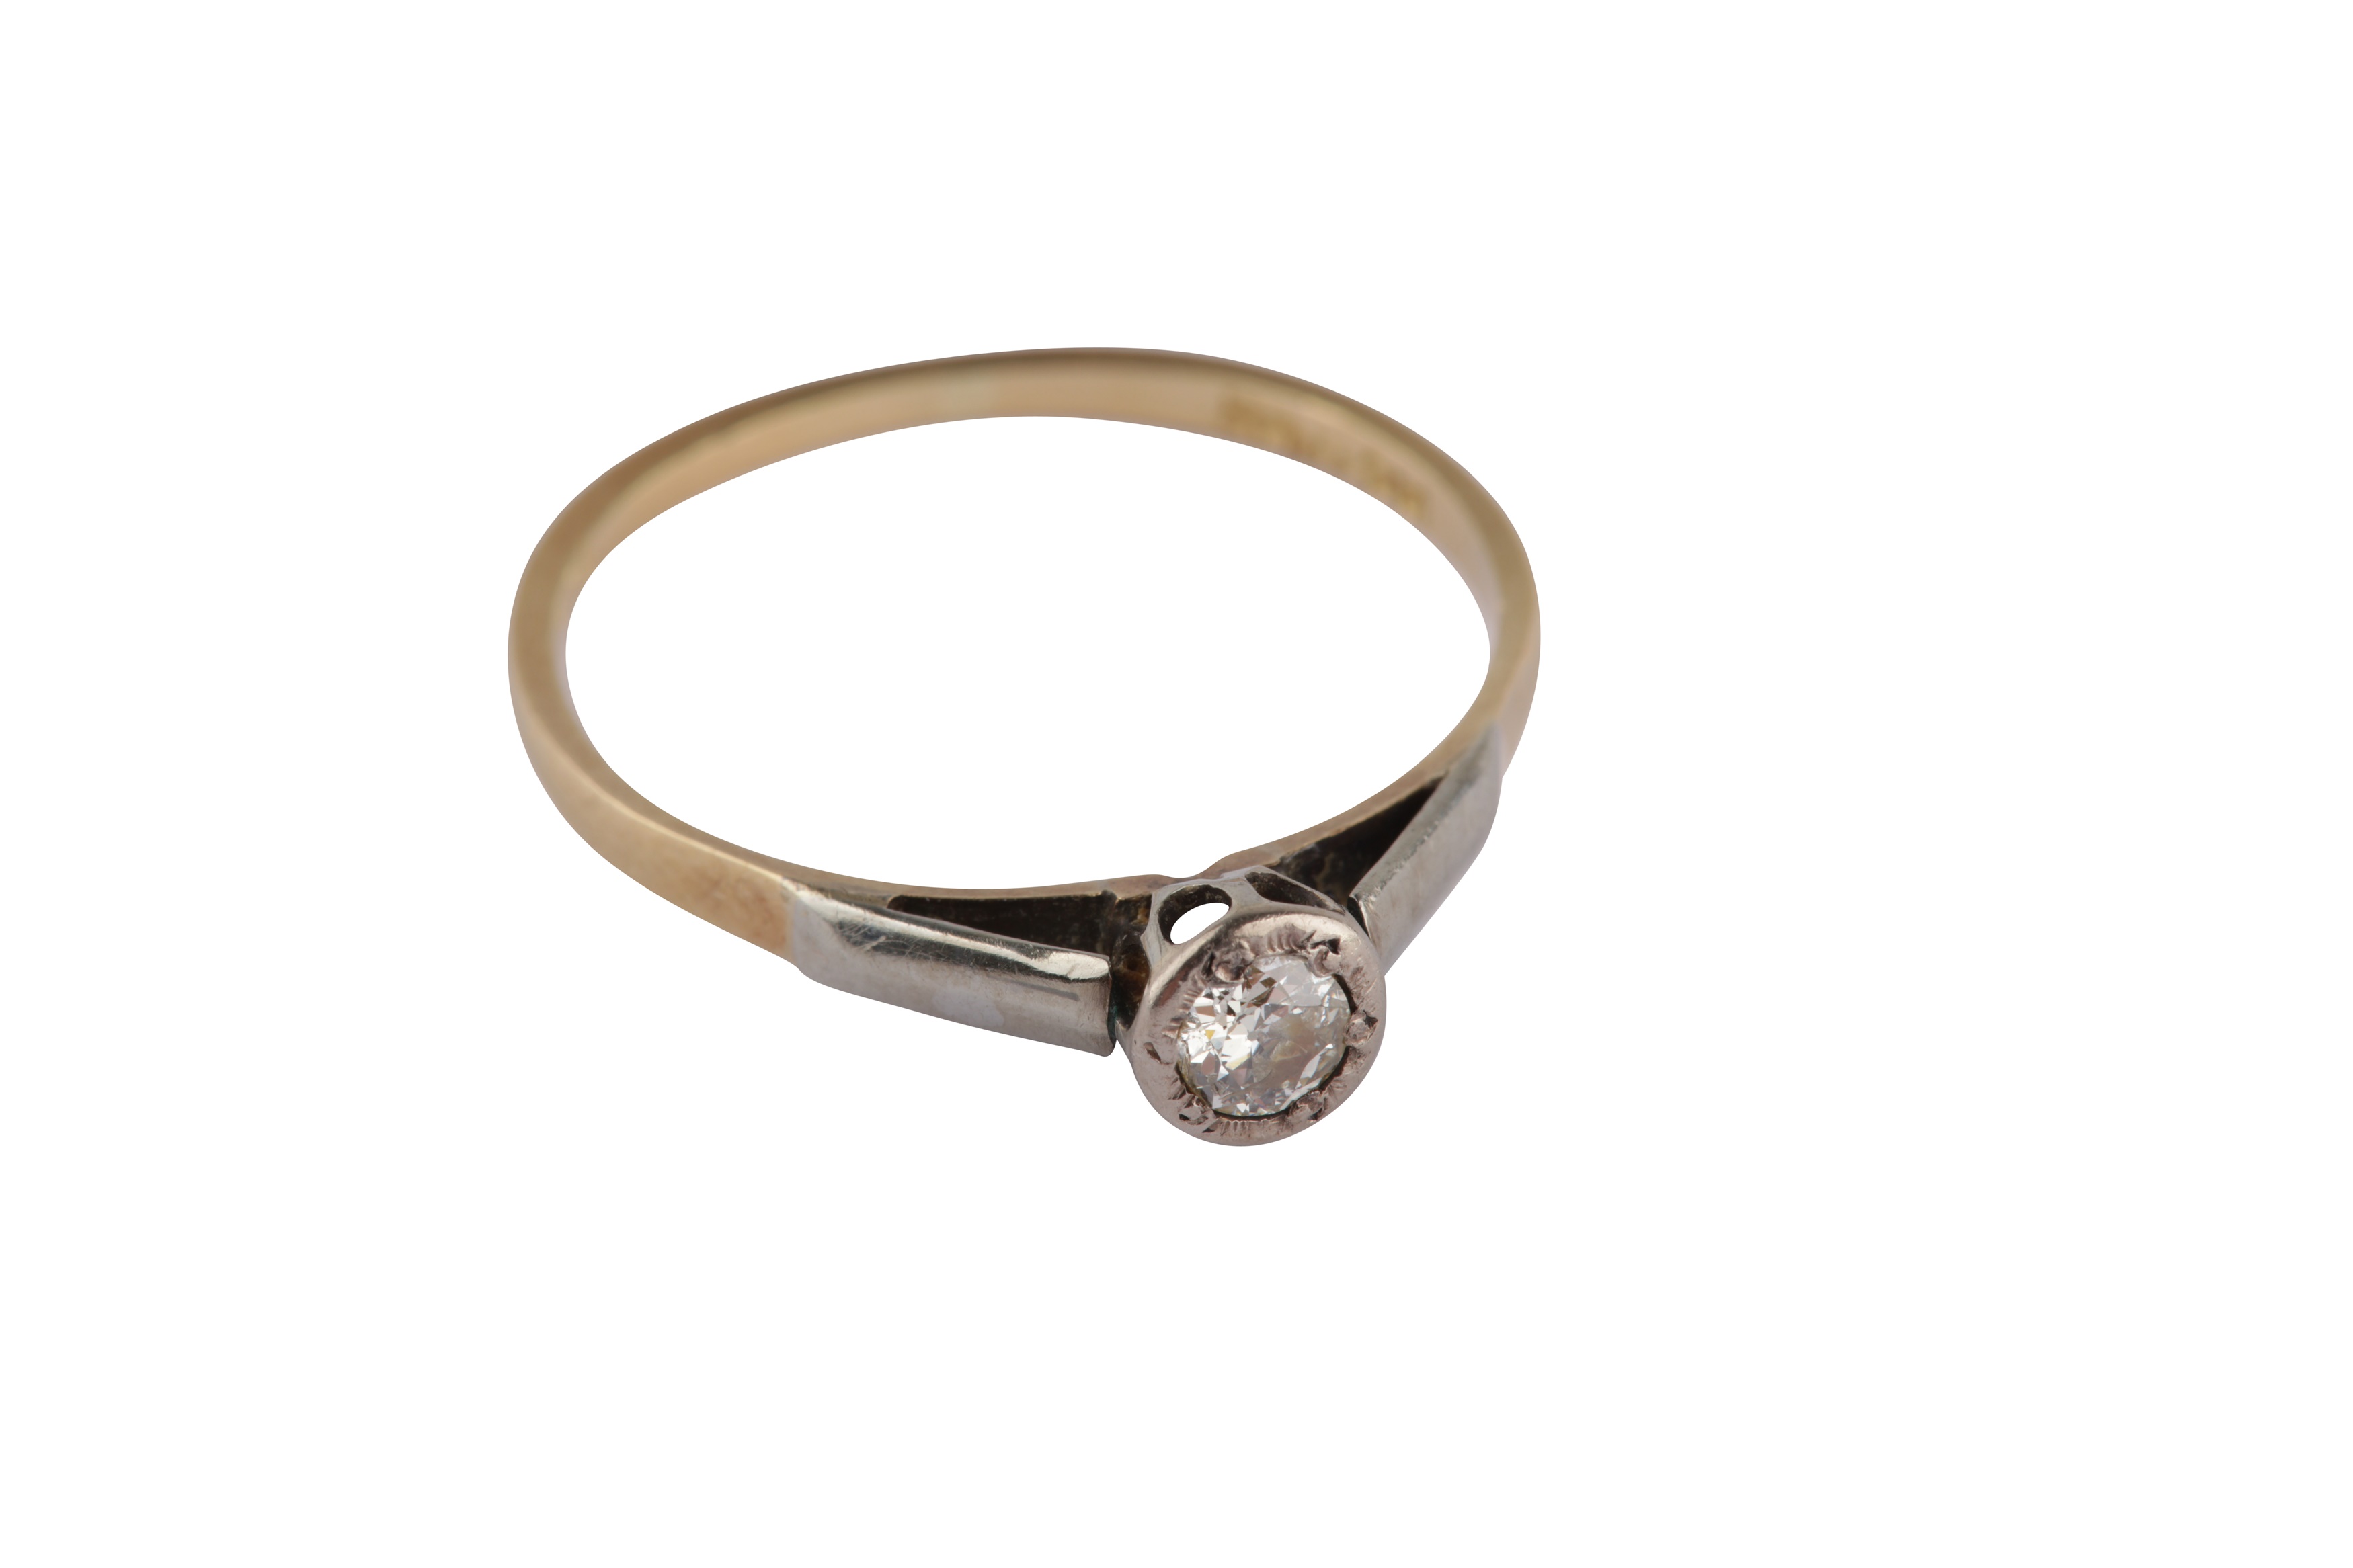 A diamond ring and a fancy-link bracelet